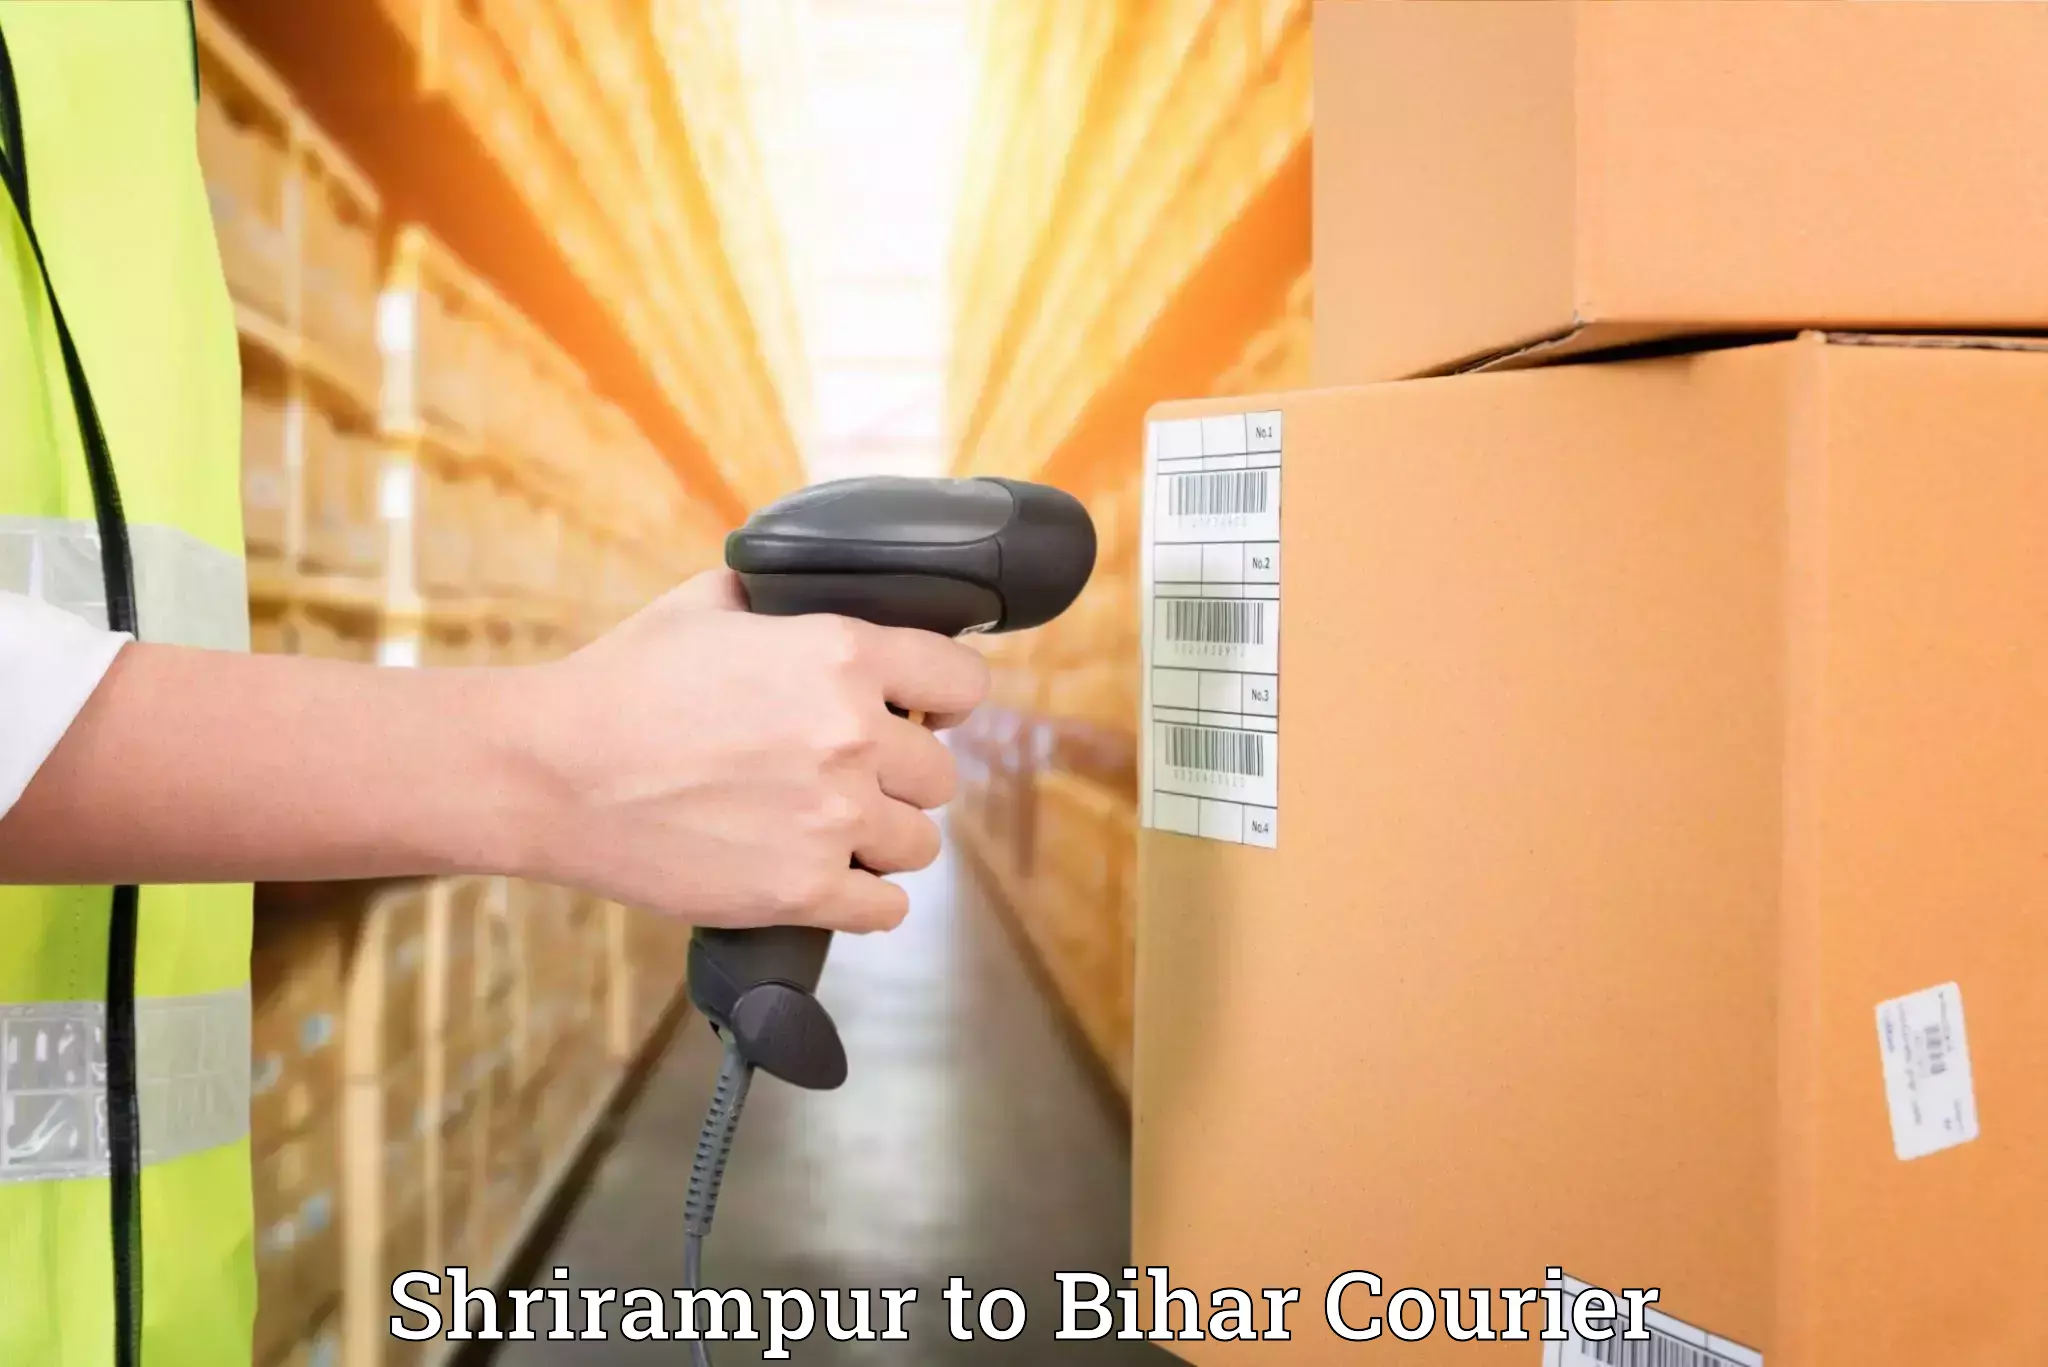 Furniture delivery service Shrirampur to Benipatti